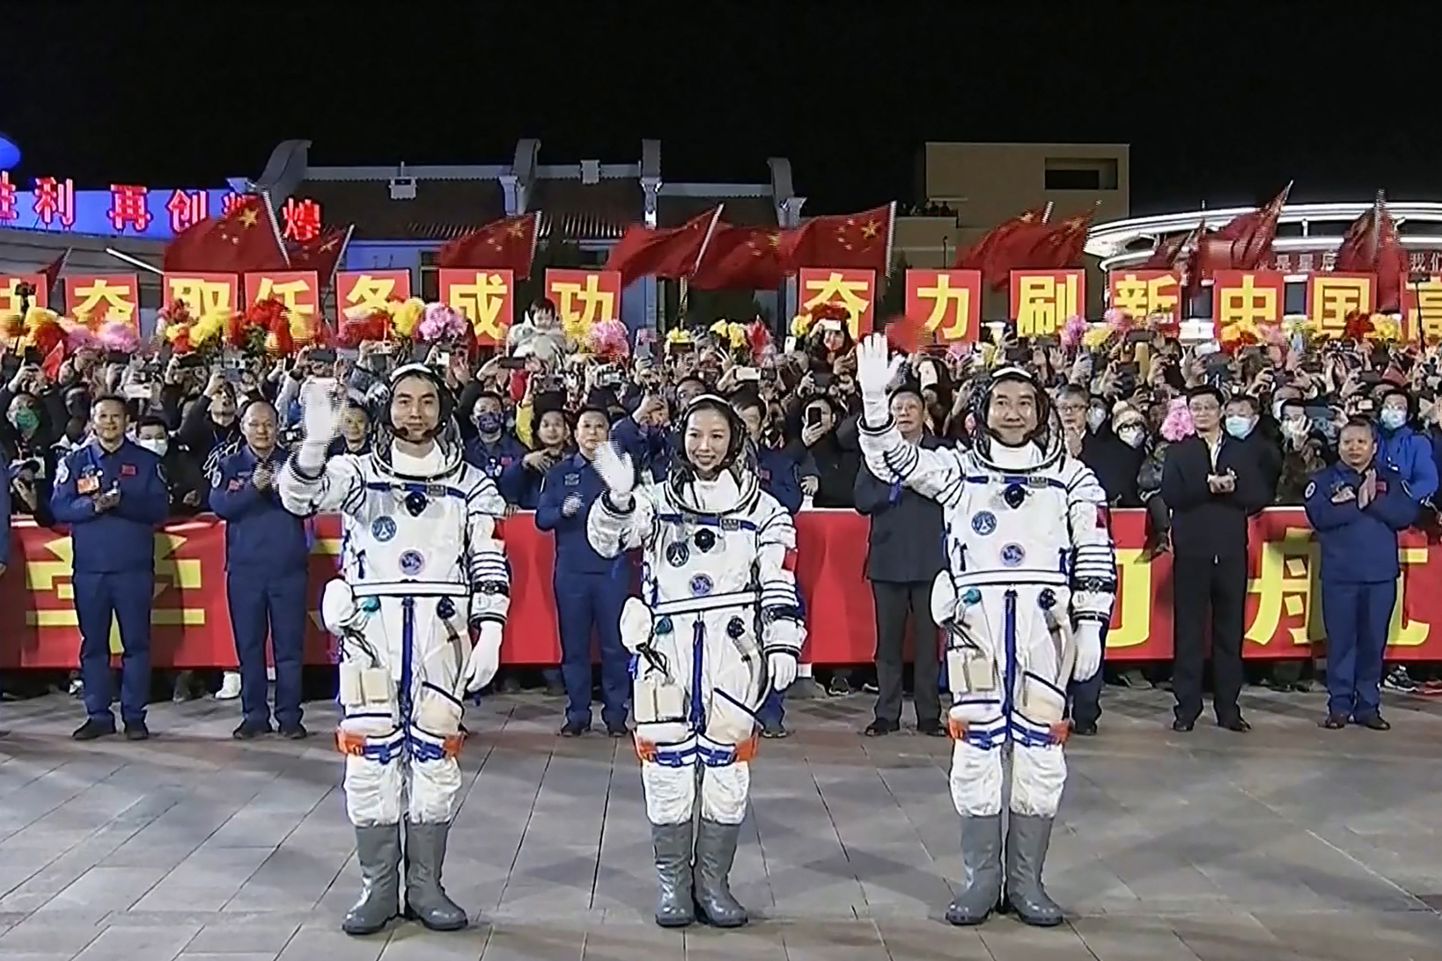 Ķīnā piektdien, 15. oktobrī, startējis pilotējamais kosmosa kuģis "Shenzhou 13" ar trim astronautiem.